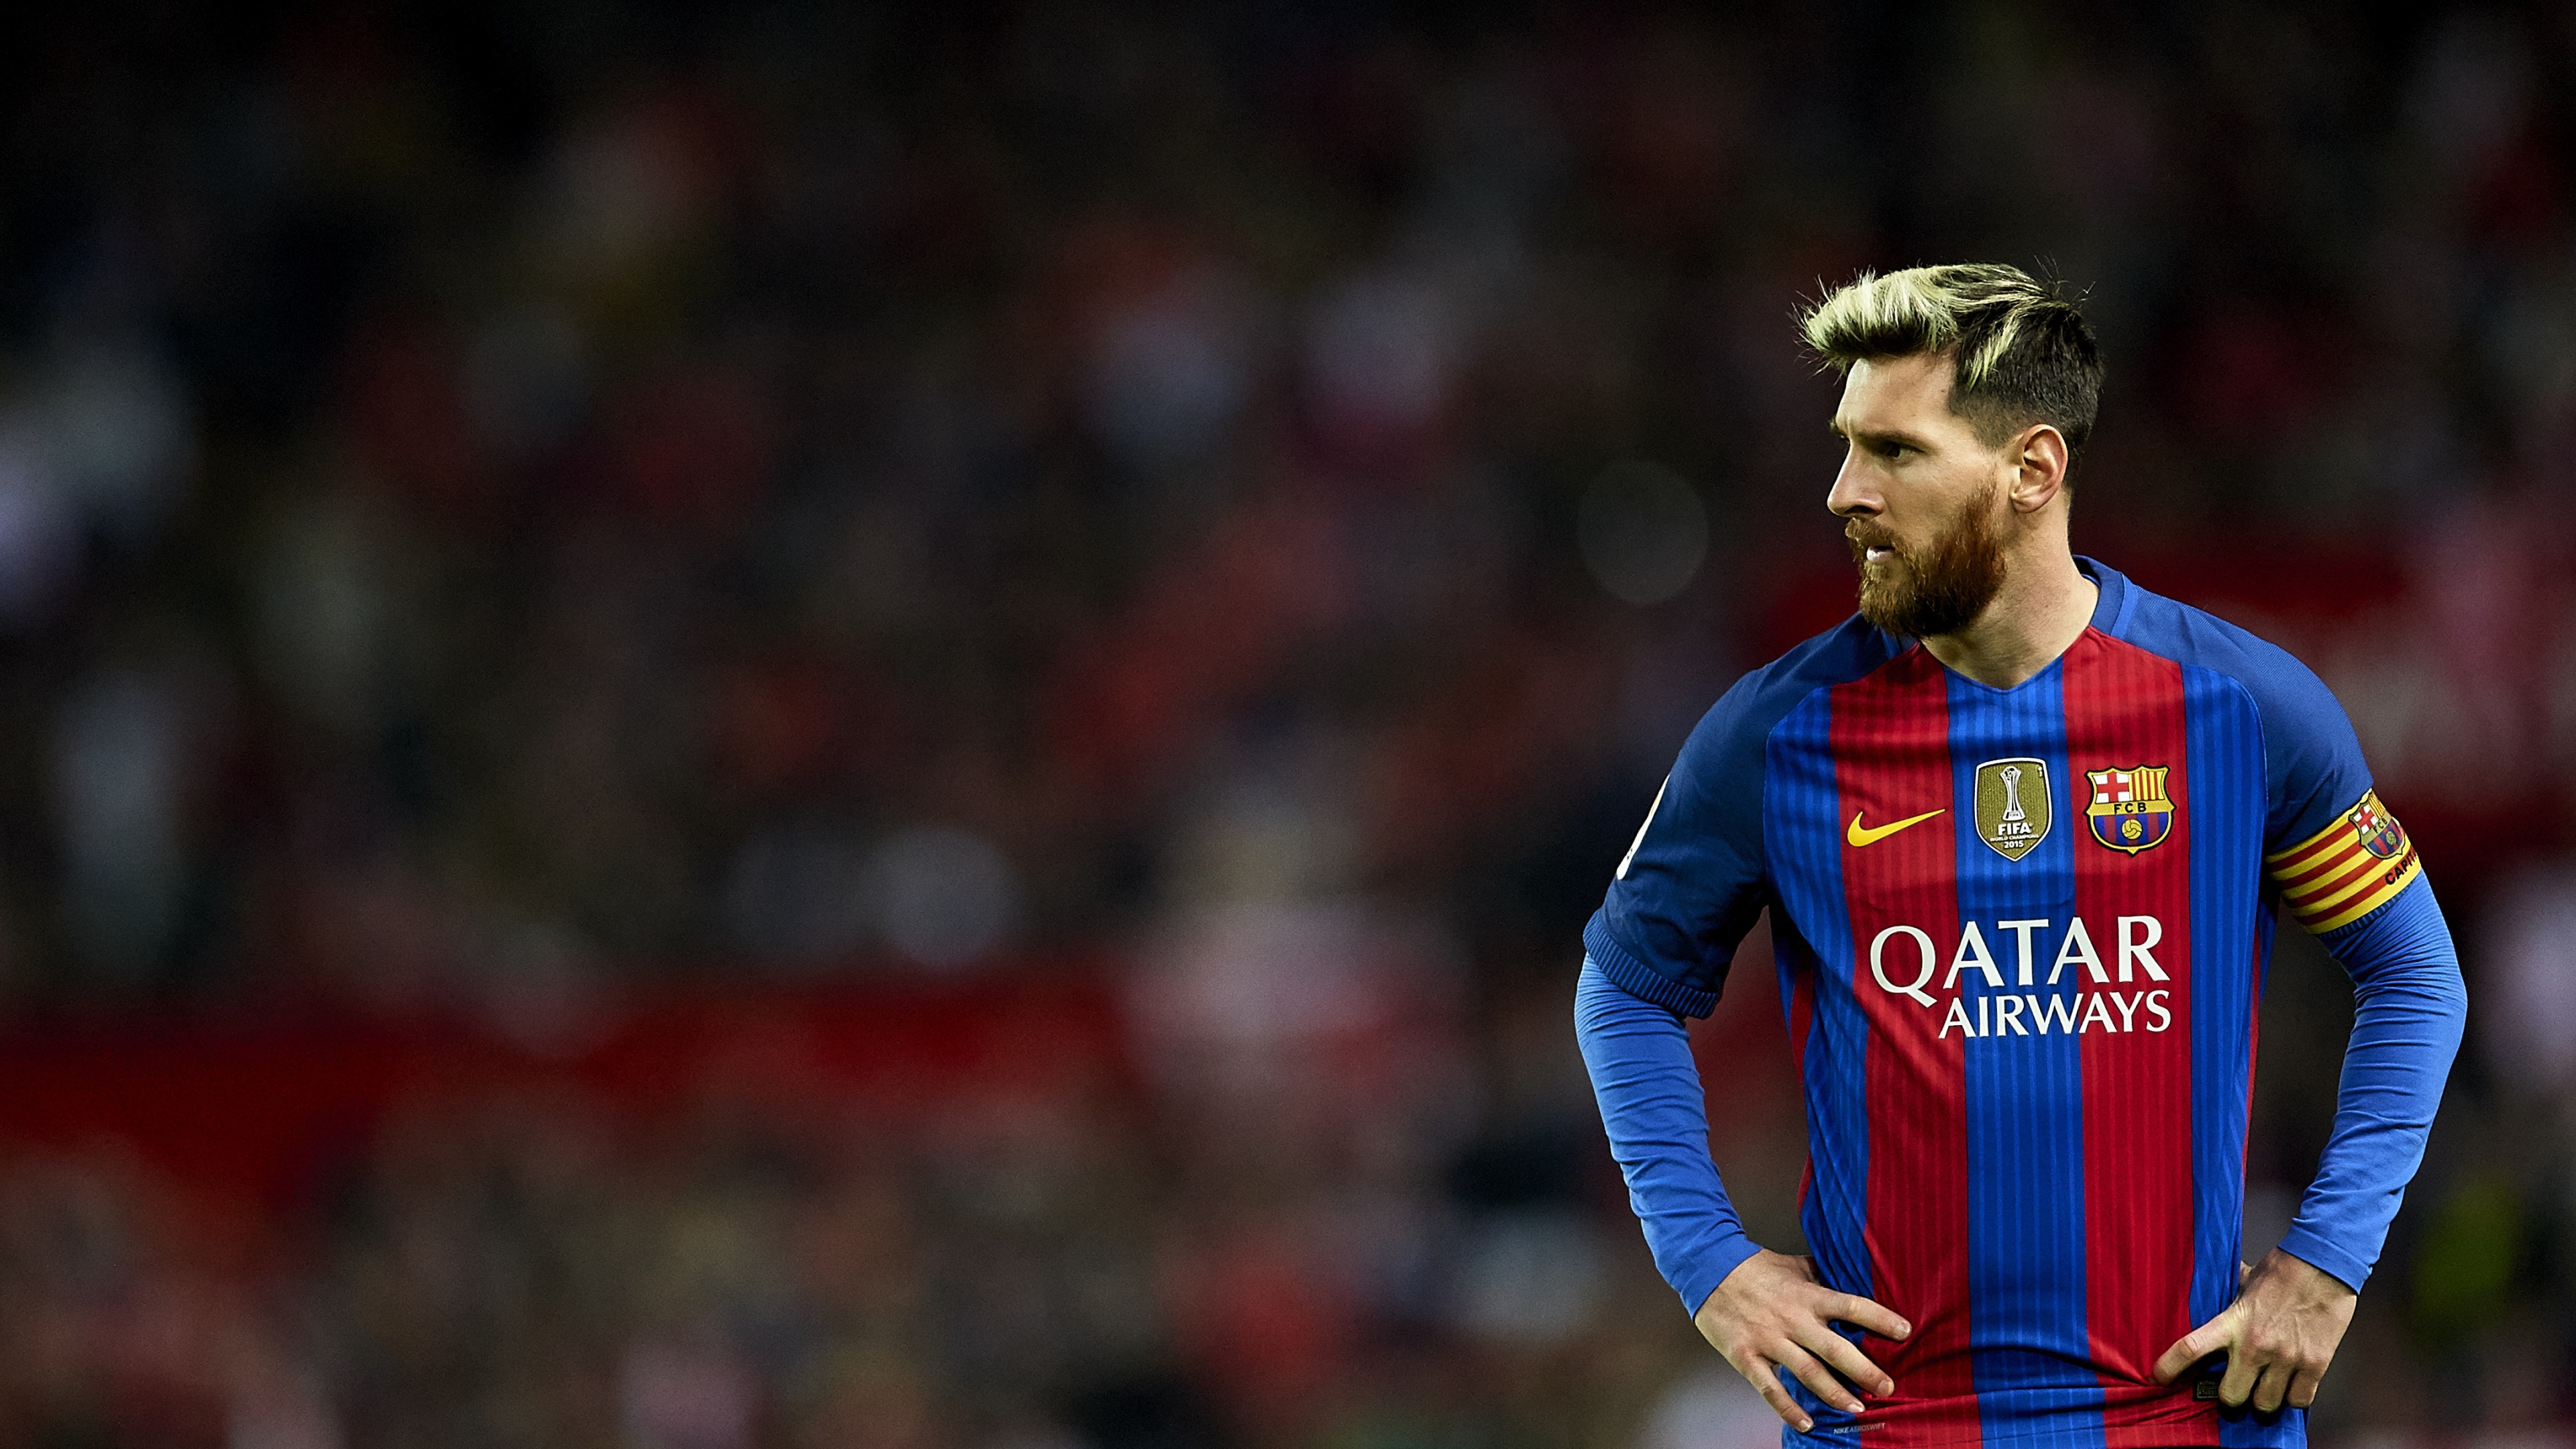 Wallpaper / Lionel Messi, Barcelona, FCB, soccer, 4K free download